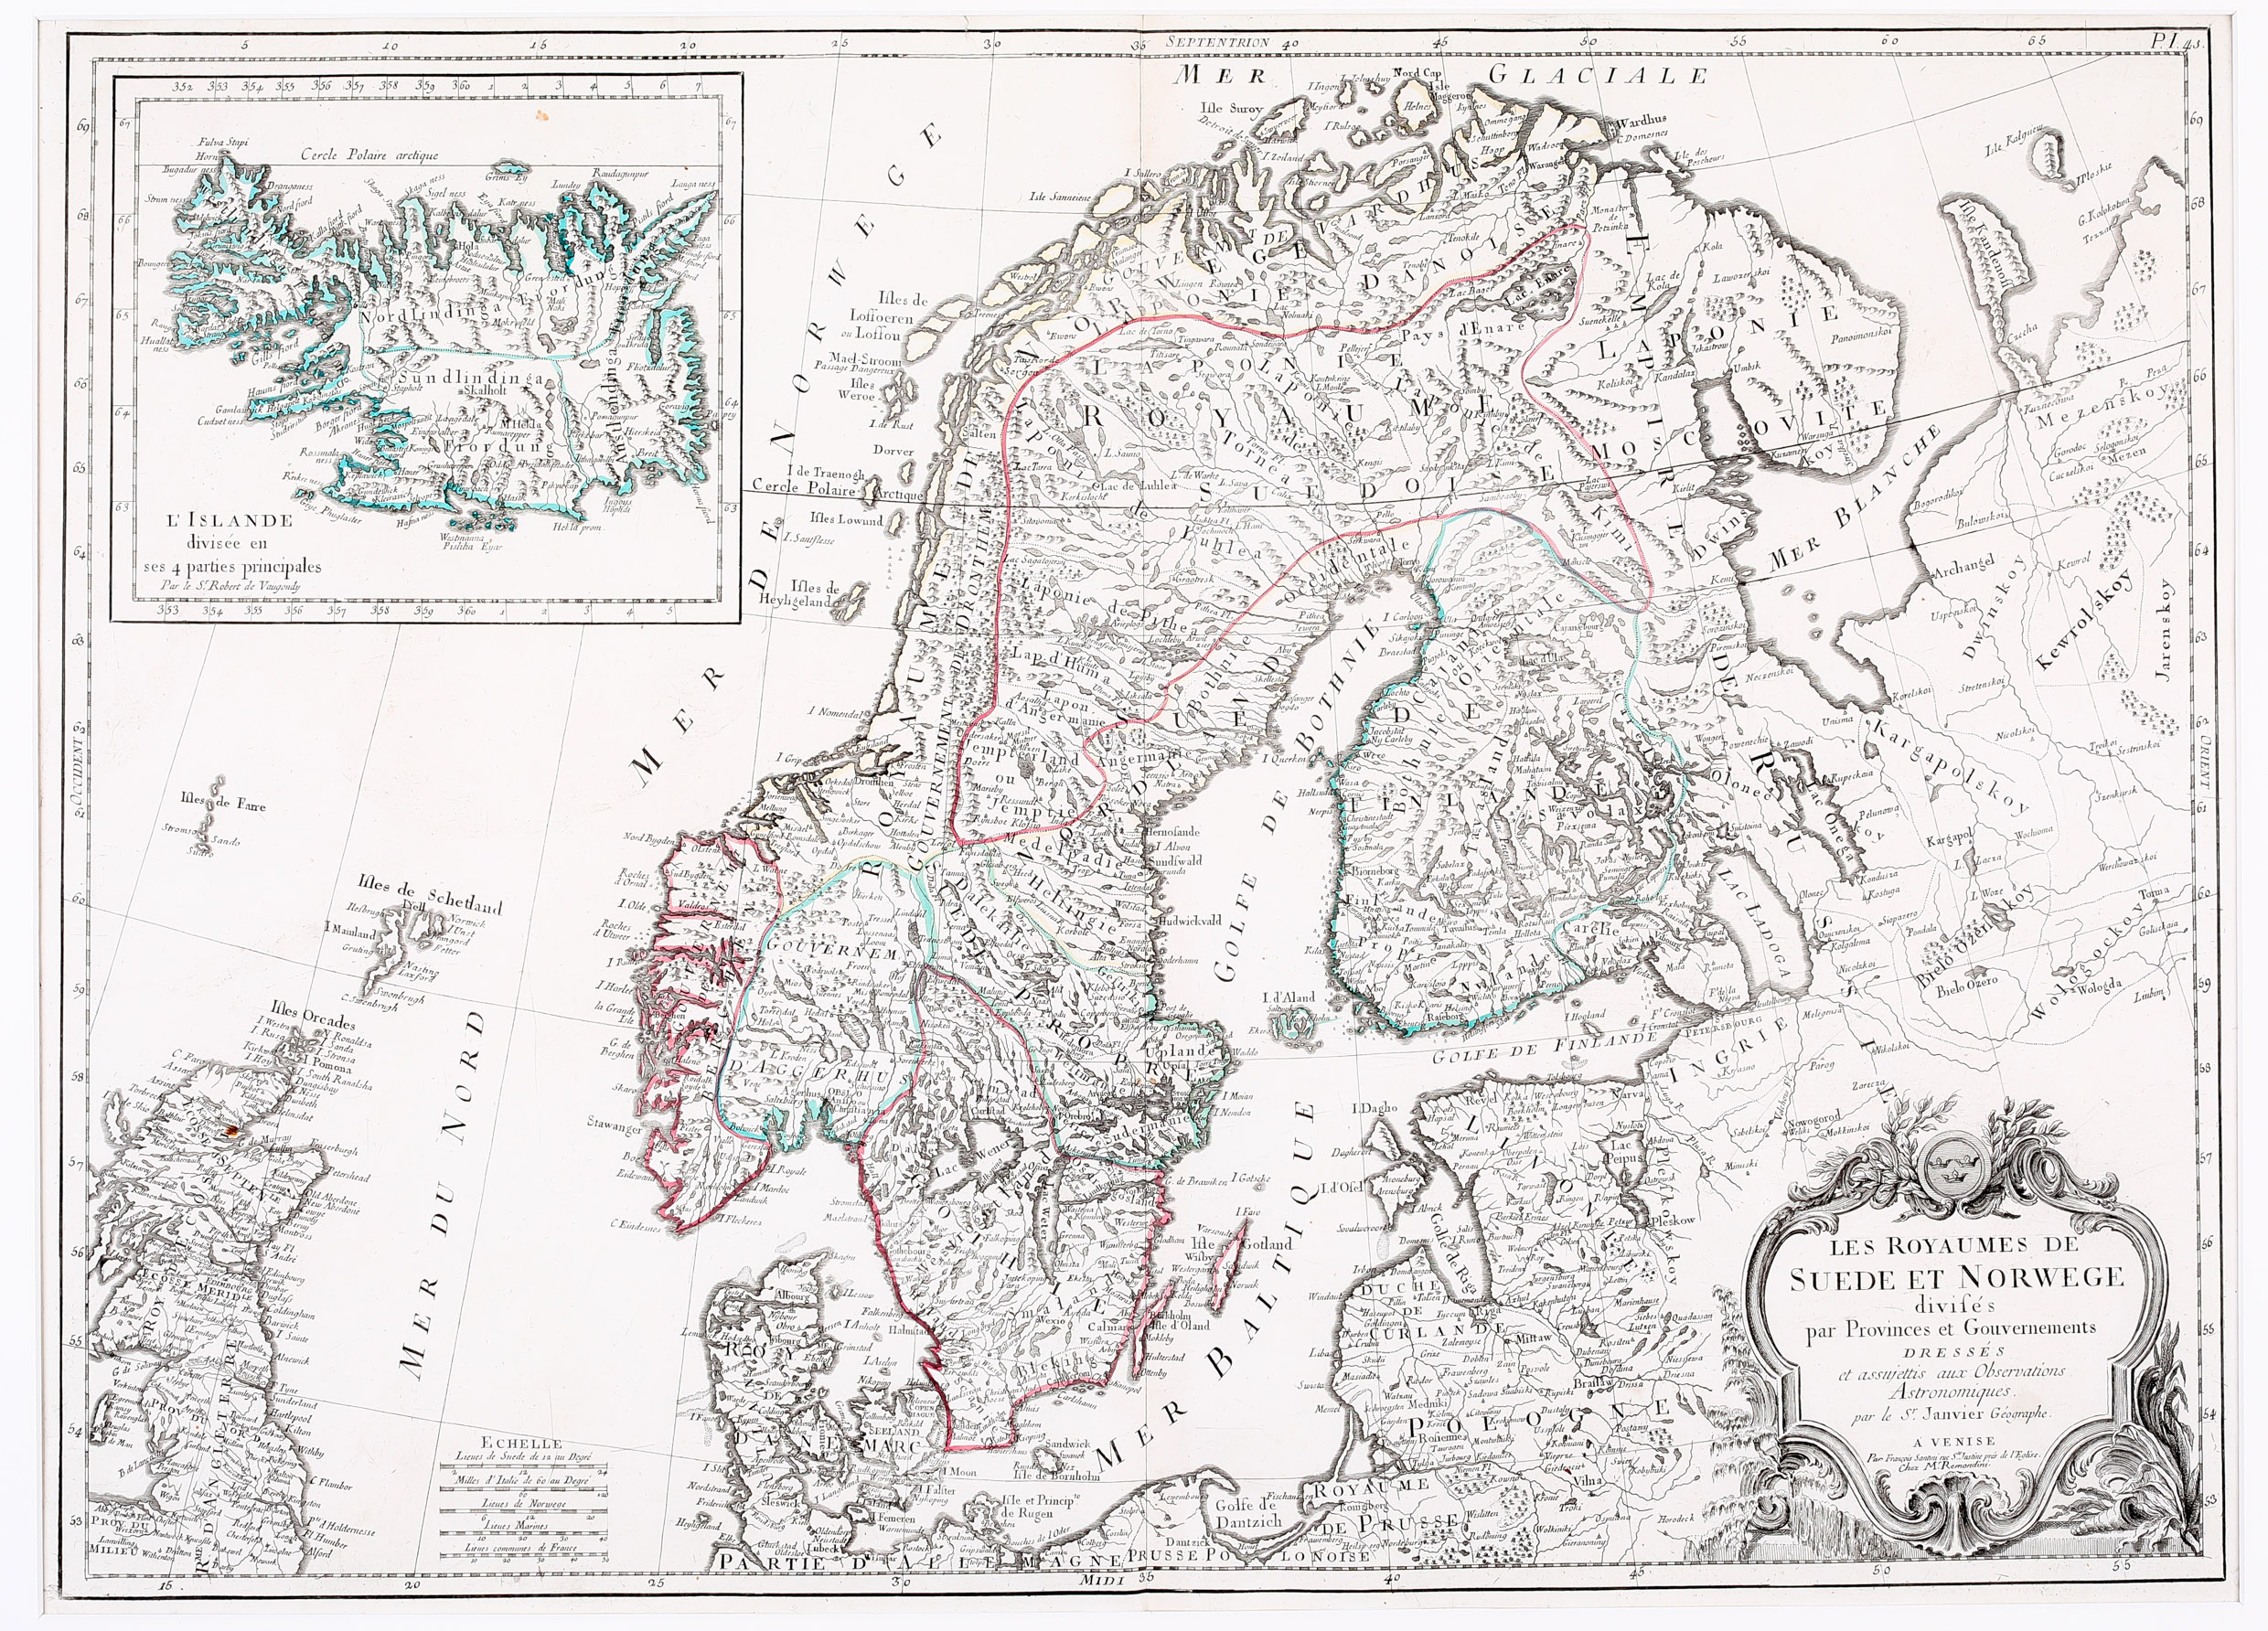 81. Les Royaumes de Suede et de Norwege